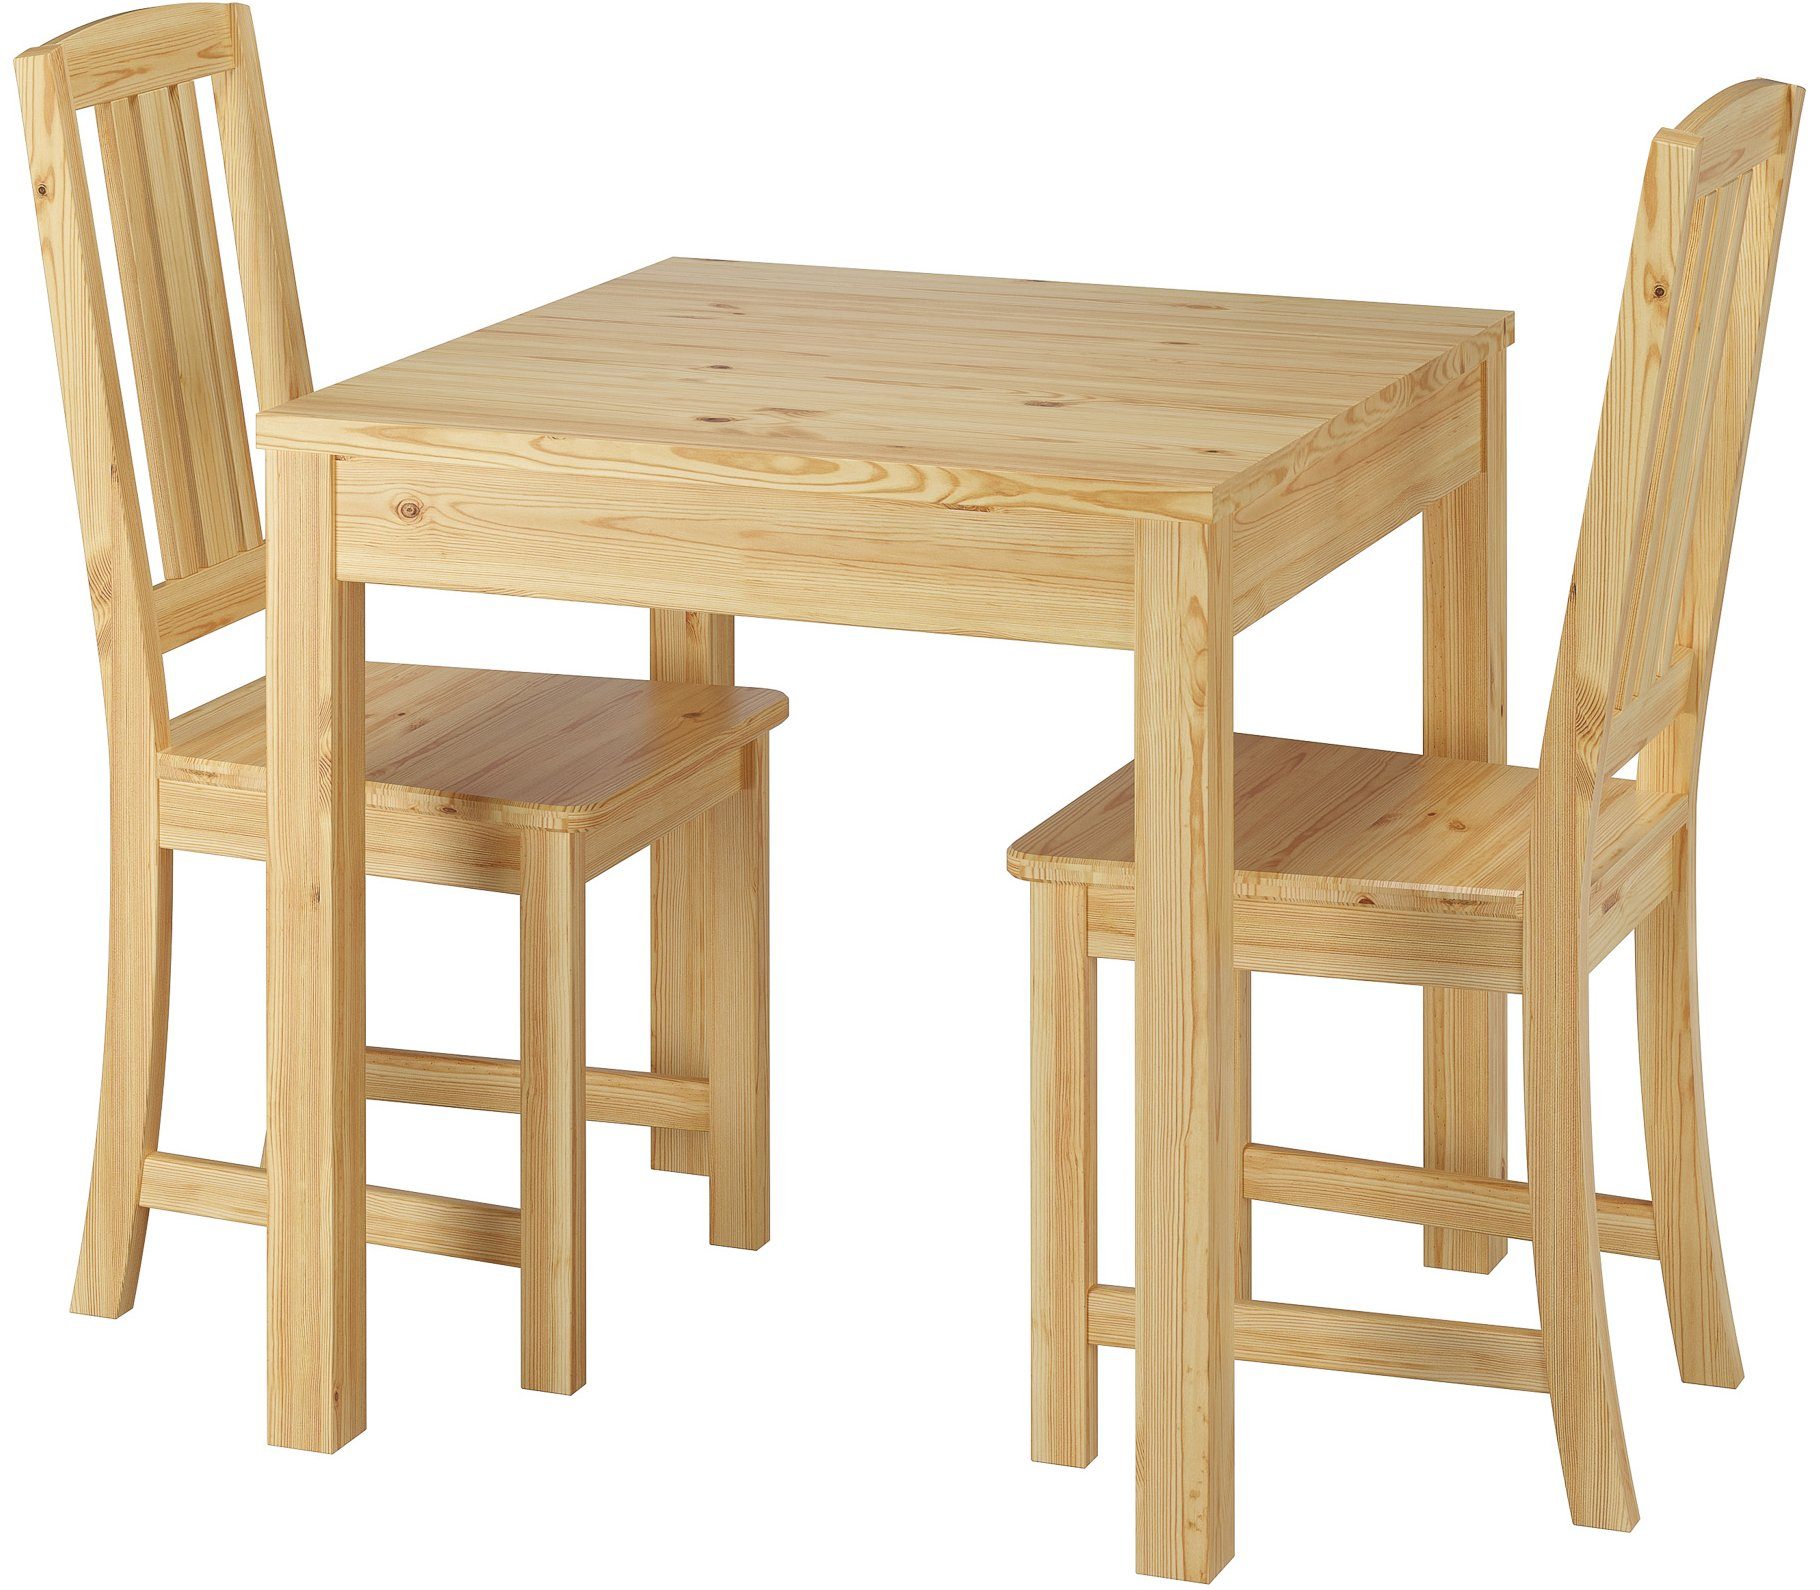 ERST-HOLZ Essgruppe Stilvolle kleine Essgruppe Tisch und 2 Stühle Kiefer natur Massivholz